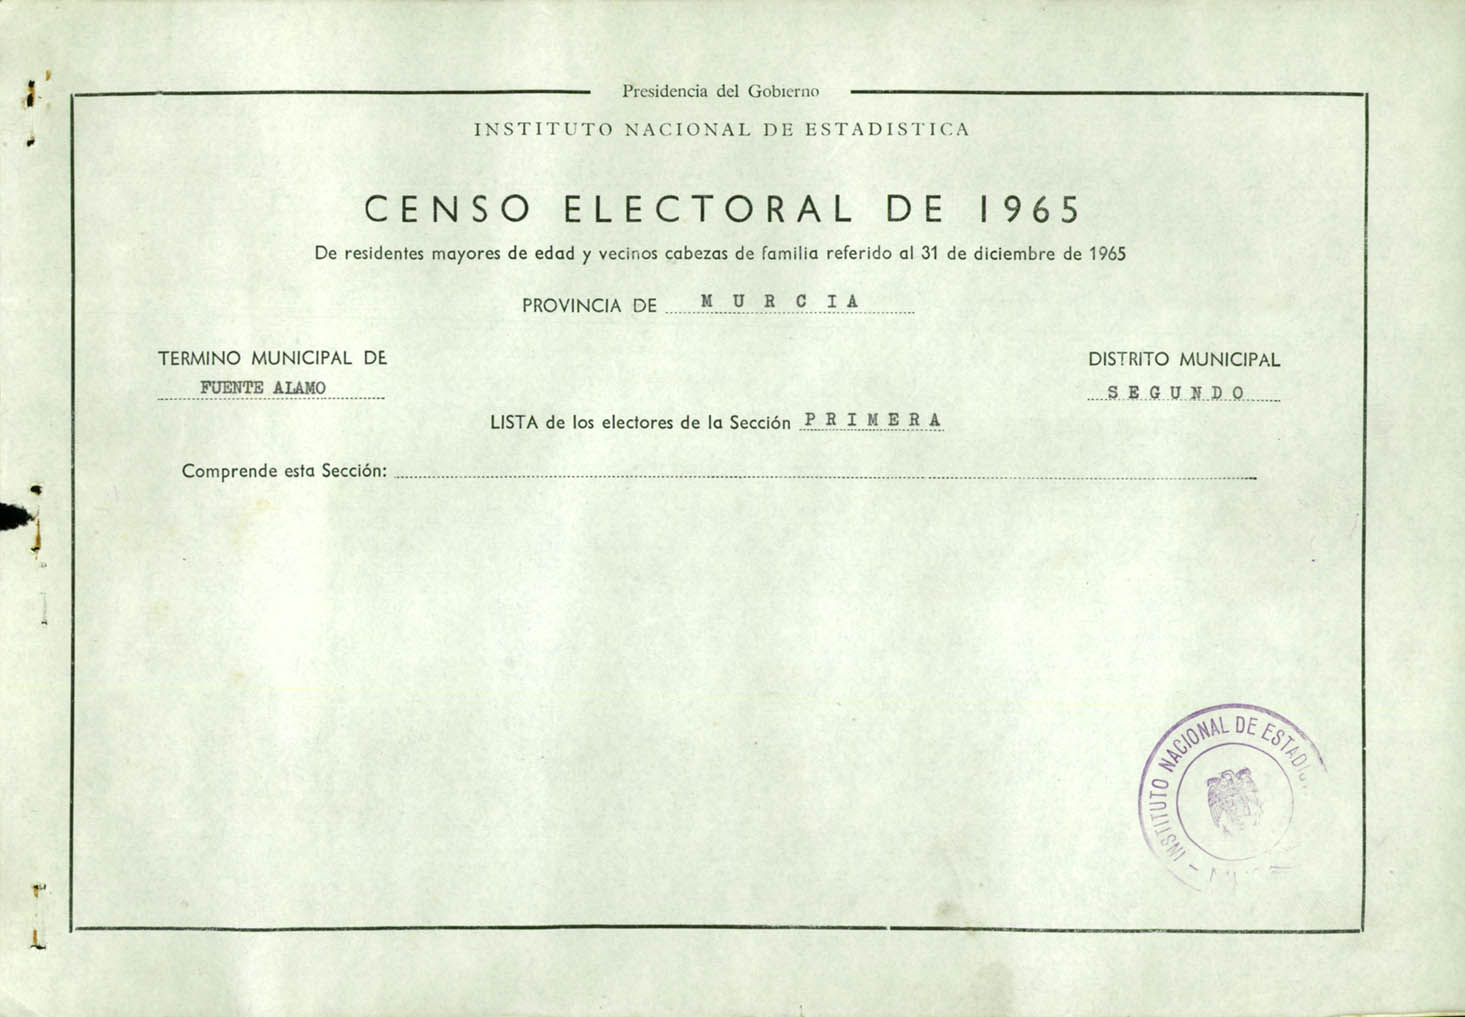 Censo electoral provincial de 1965: listas definitivas de Fuente Álamo, Distrito 2º, sección 1ª.